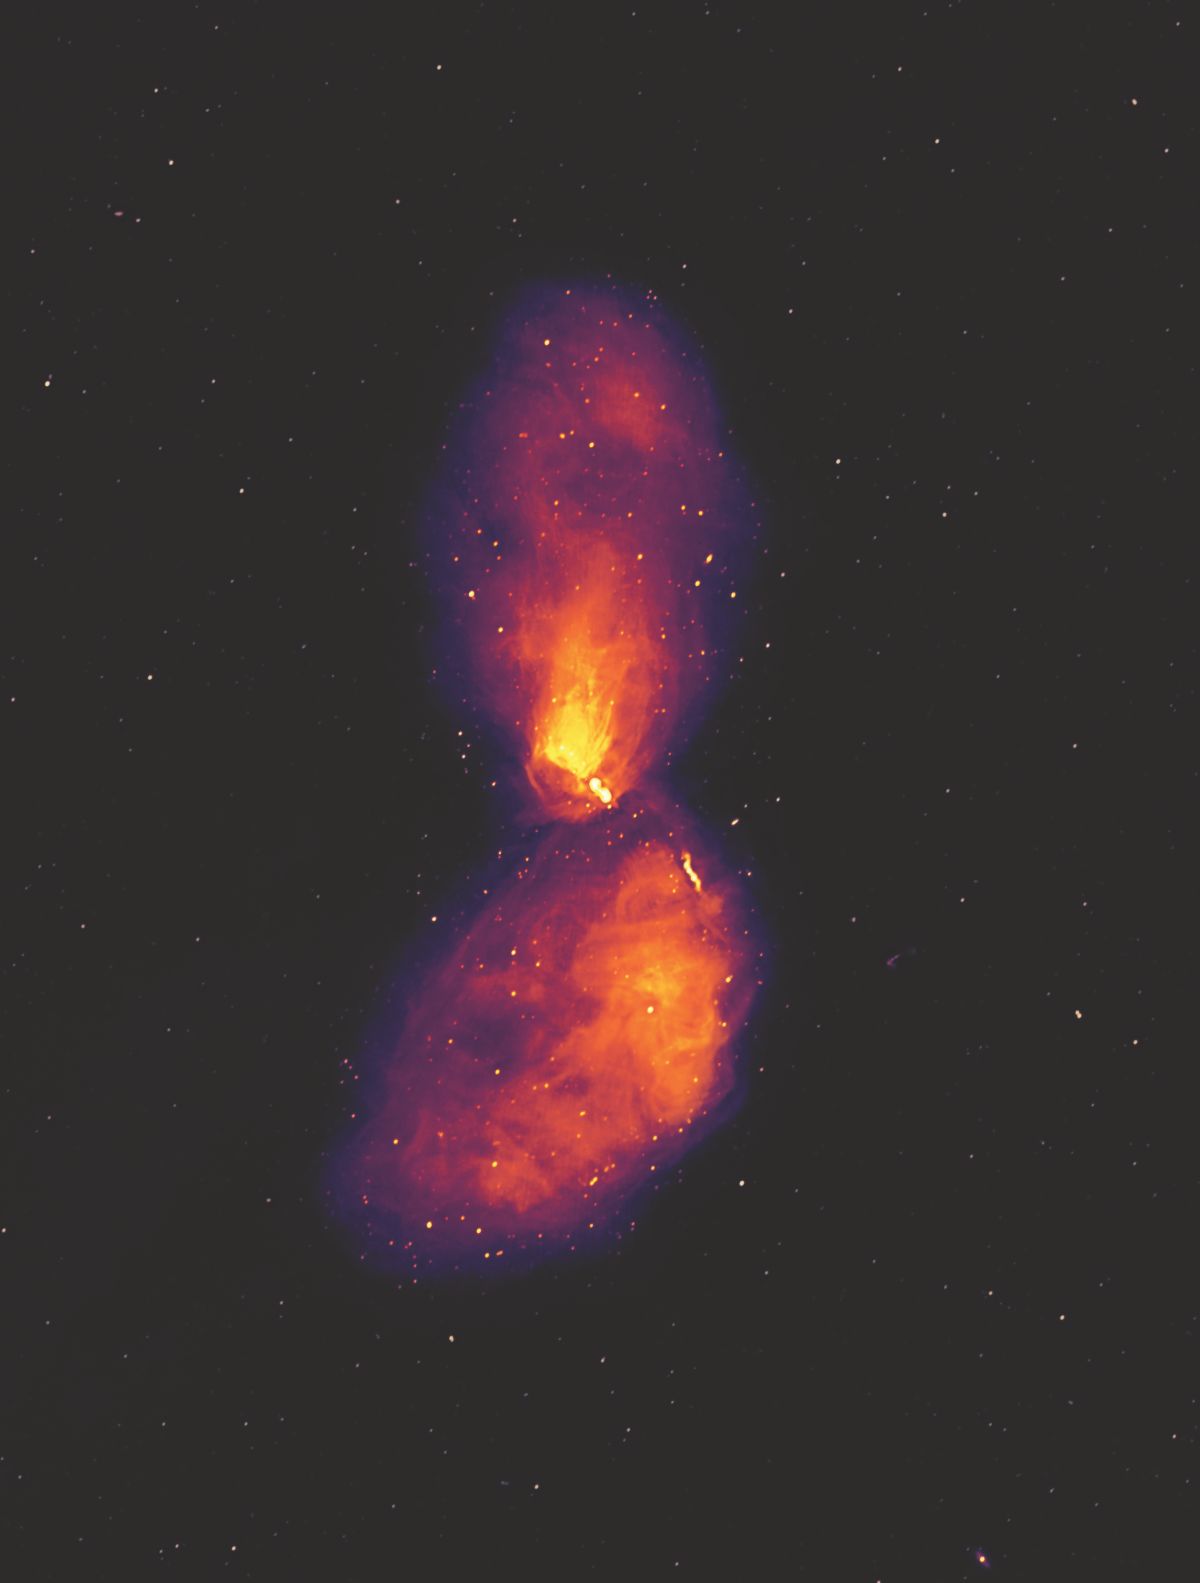 Centaurus A ist eine elliptische Riesengalaxie, die rund zwölf Millionen Lichtjahre entfernt ist. Das Bild zeigt die Radioemissionen der Galaxie und zeigt ausgedehnte Plasmastrukturen, die sich weit jenseits der sichtbaren Galaxie erstrecken. (Credit: Ben McKinley, ICRAR / Curtin and Connor Matherne, Louisiana State University)